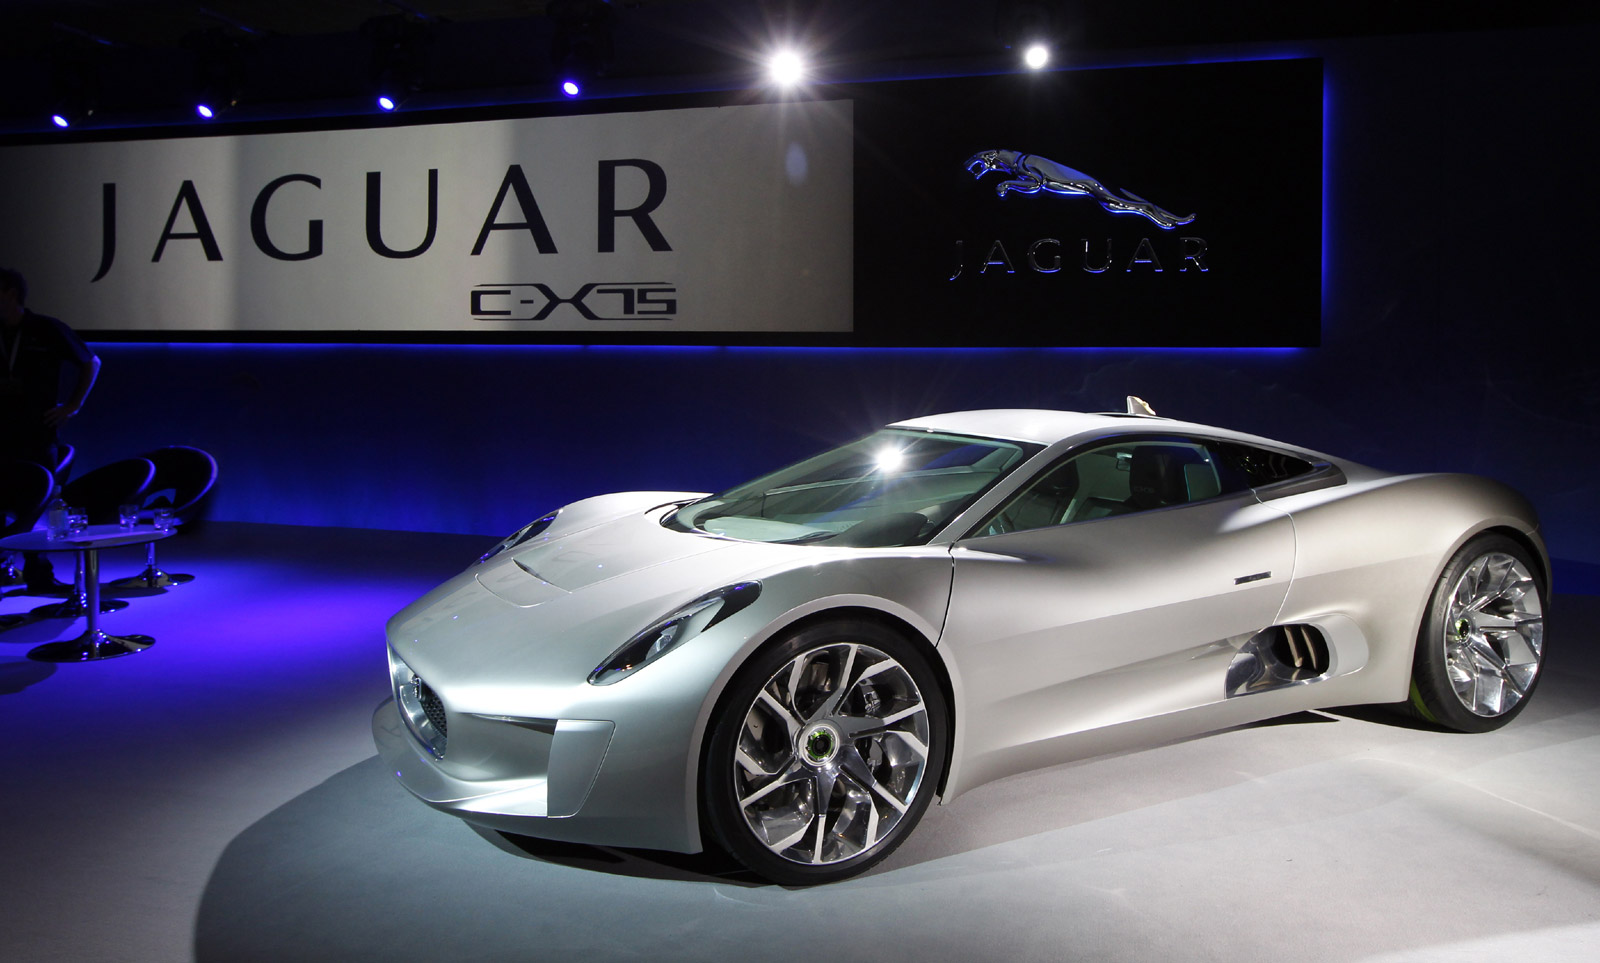 jaguar-c-x75-concept-car_100412681_h